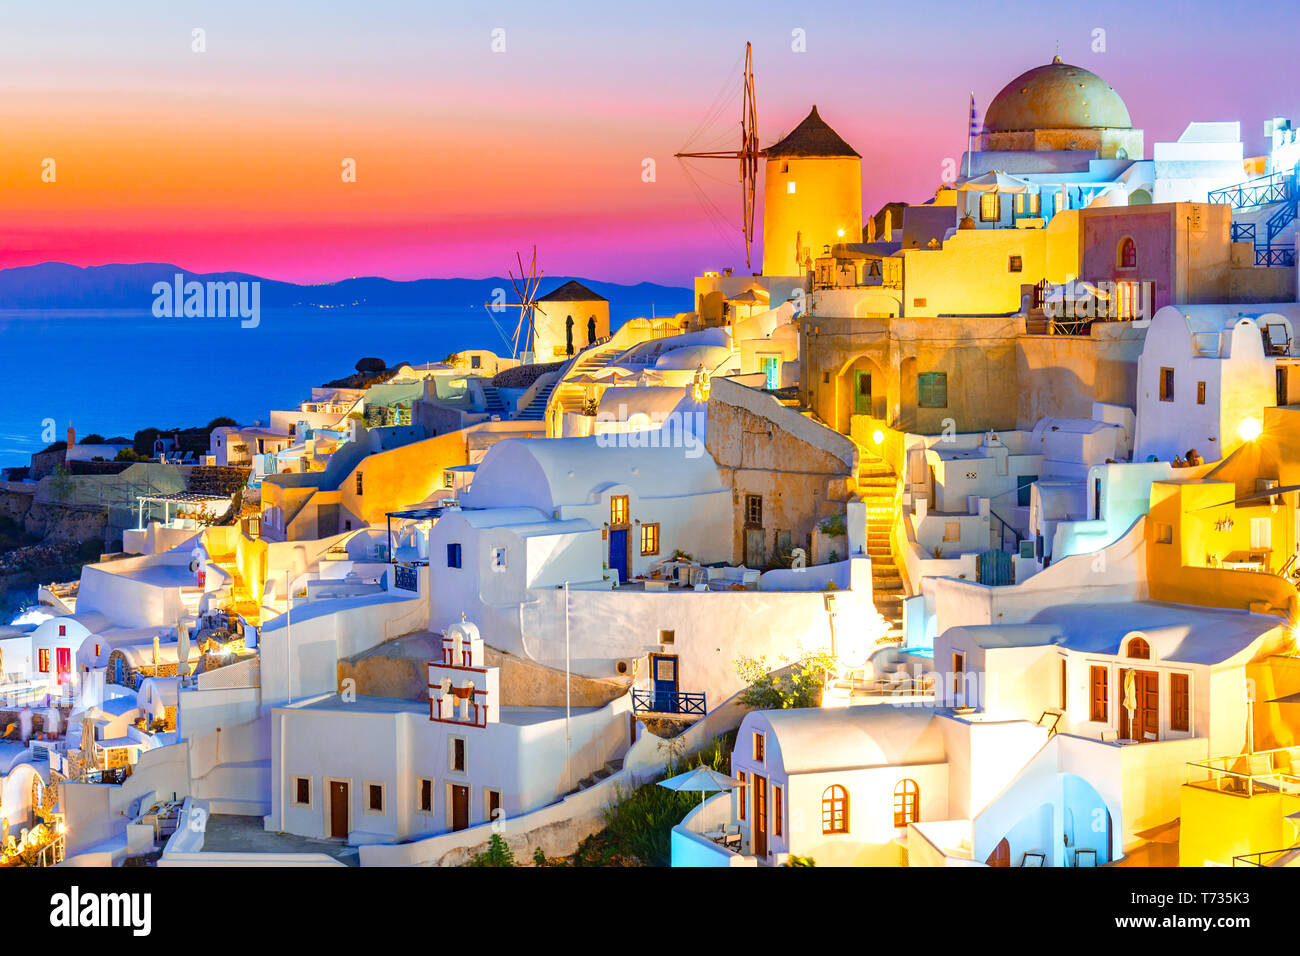 Puesta de sol en Oia, isla de Santorini, Grecia al atardecer. Famosos y tradicionales casas blancas e iglesias con cúpulas azules a lo largo de la Caldera, el mar Egeo. Foto de stock